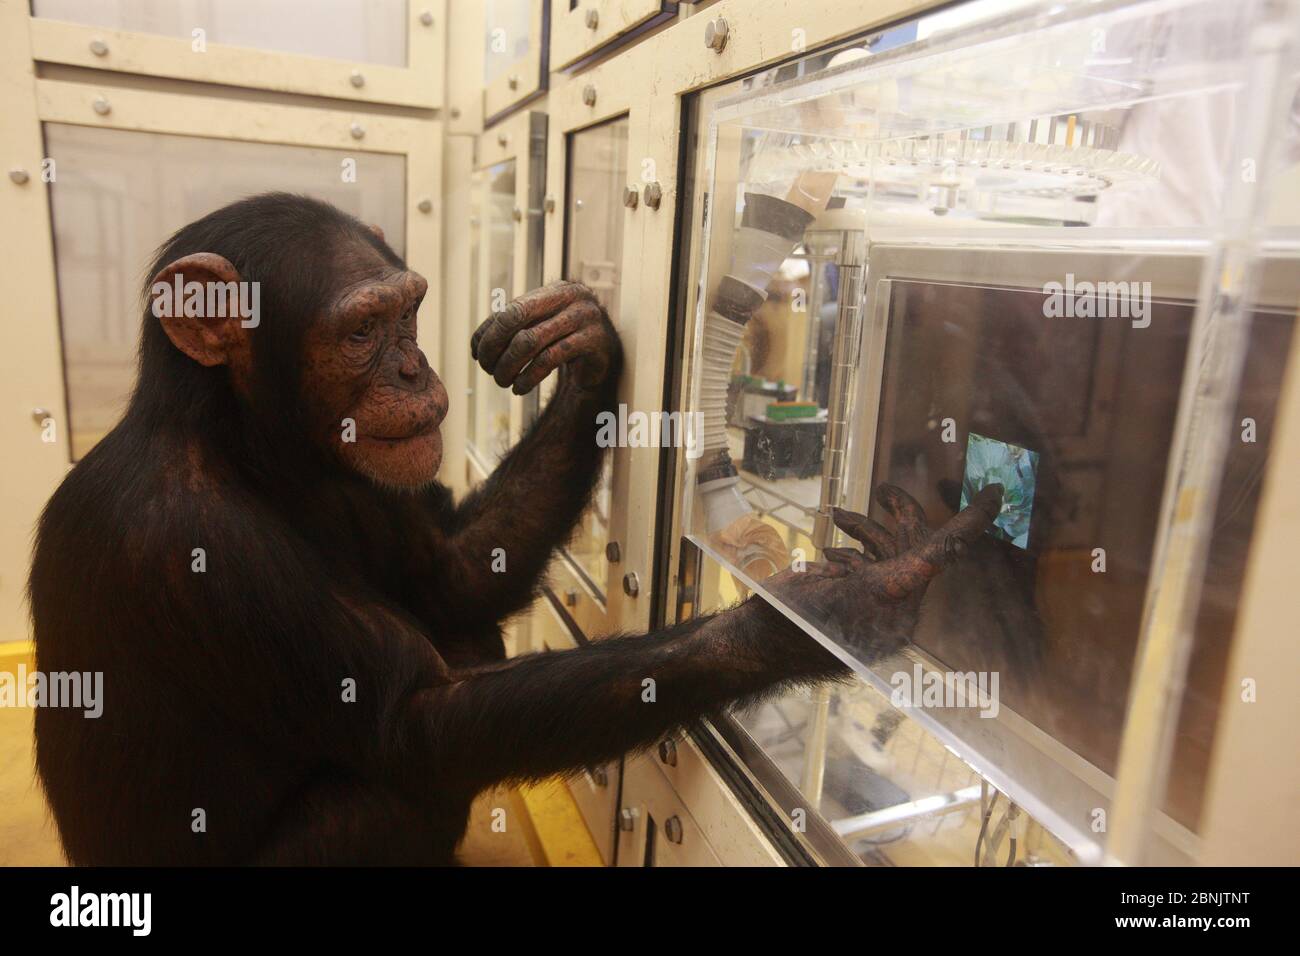 Uno scimpanzé (Pan troglodytes) nel disegno rispetto al riconoscimento di foto esperimento, Università di Tokyo, Giappone Foto Stock